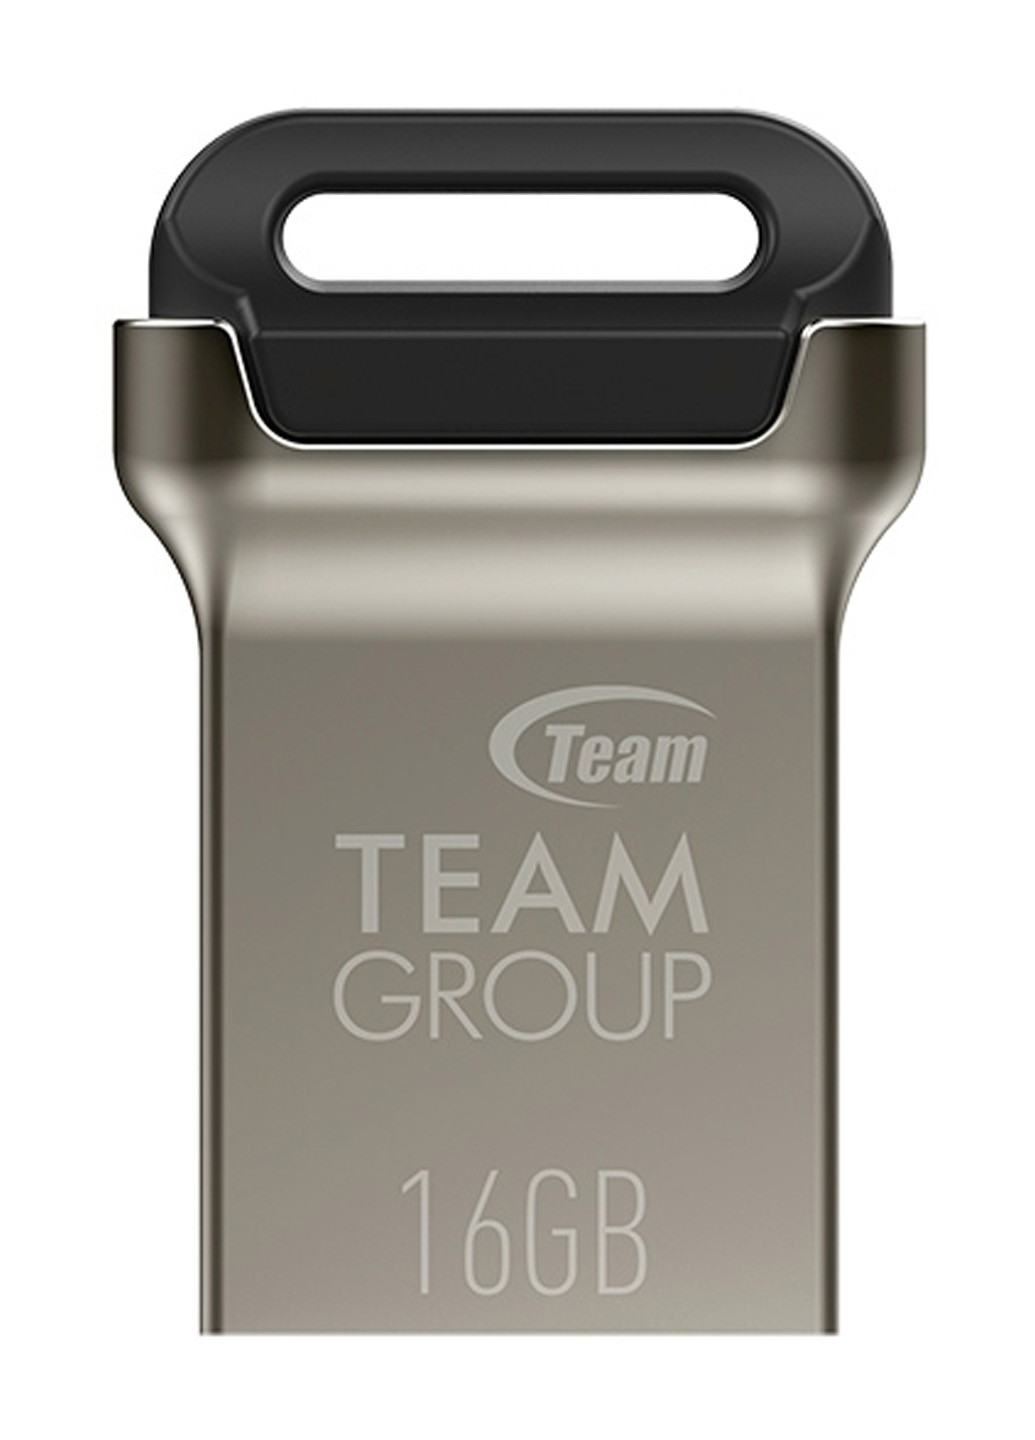 Флеш пам'ять USB C162 16GB Metal (TC162316GB01) Team флеш память usb team c162 16gb metal (tc162316gb01) (134201652)